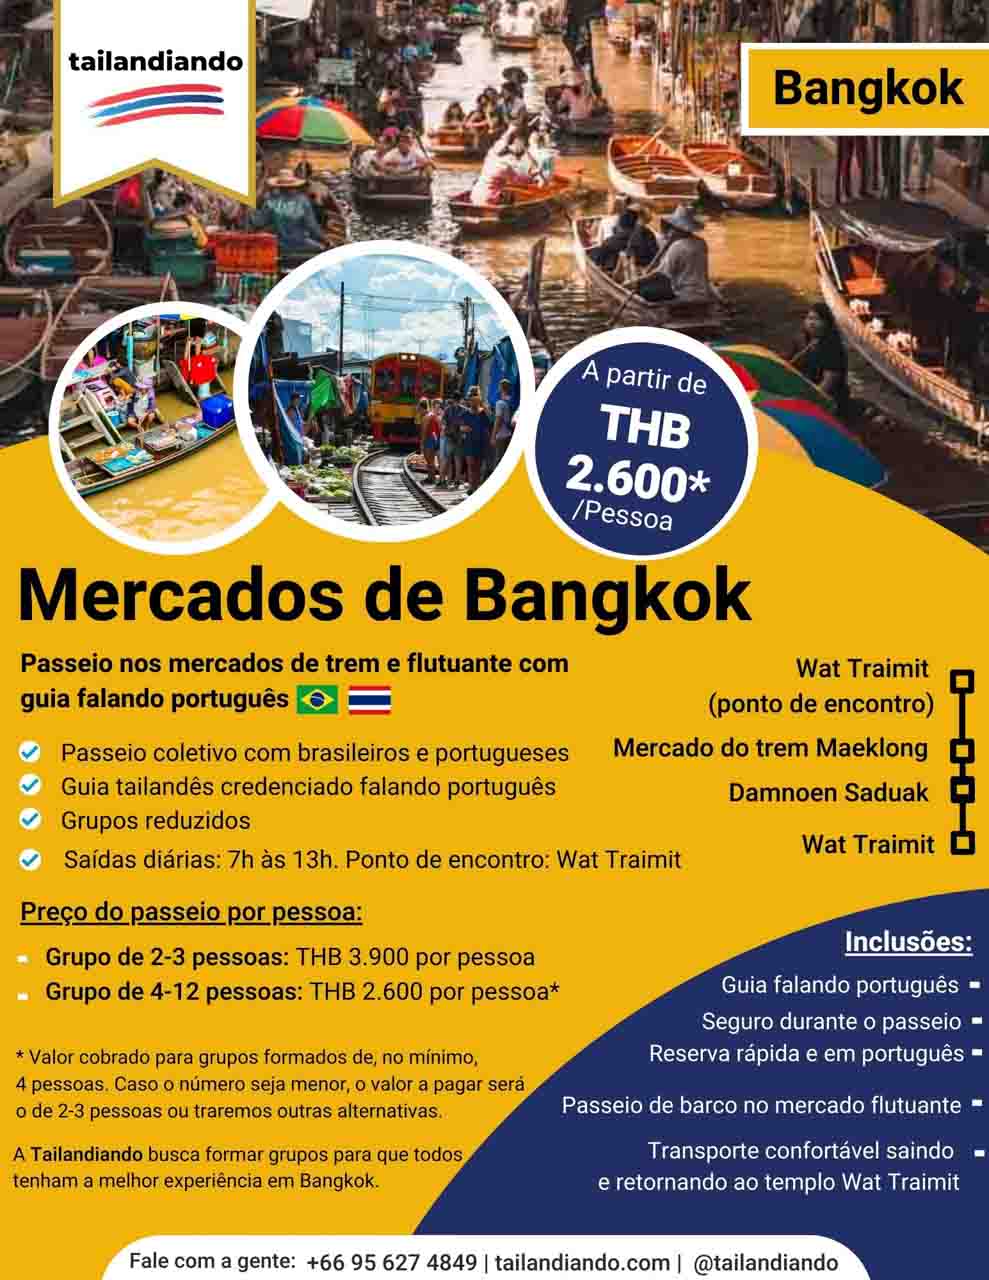 Mercados de Bangkok com guia falando português - Damnoen Saduak e Maeklong Railway Market - passeio com agência brasileira Tailandiando